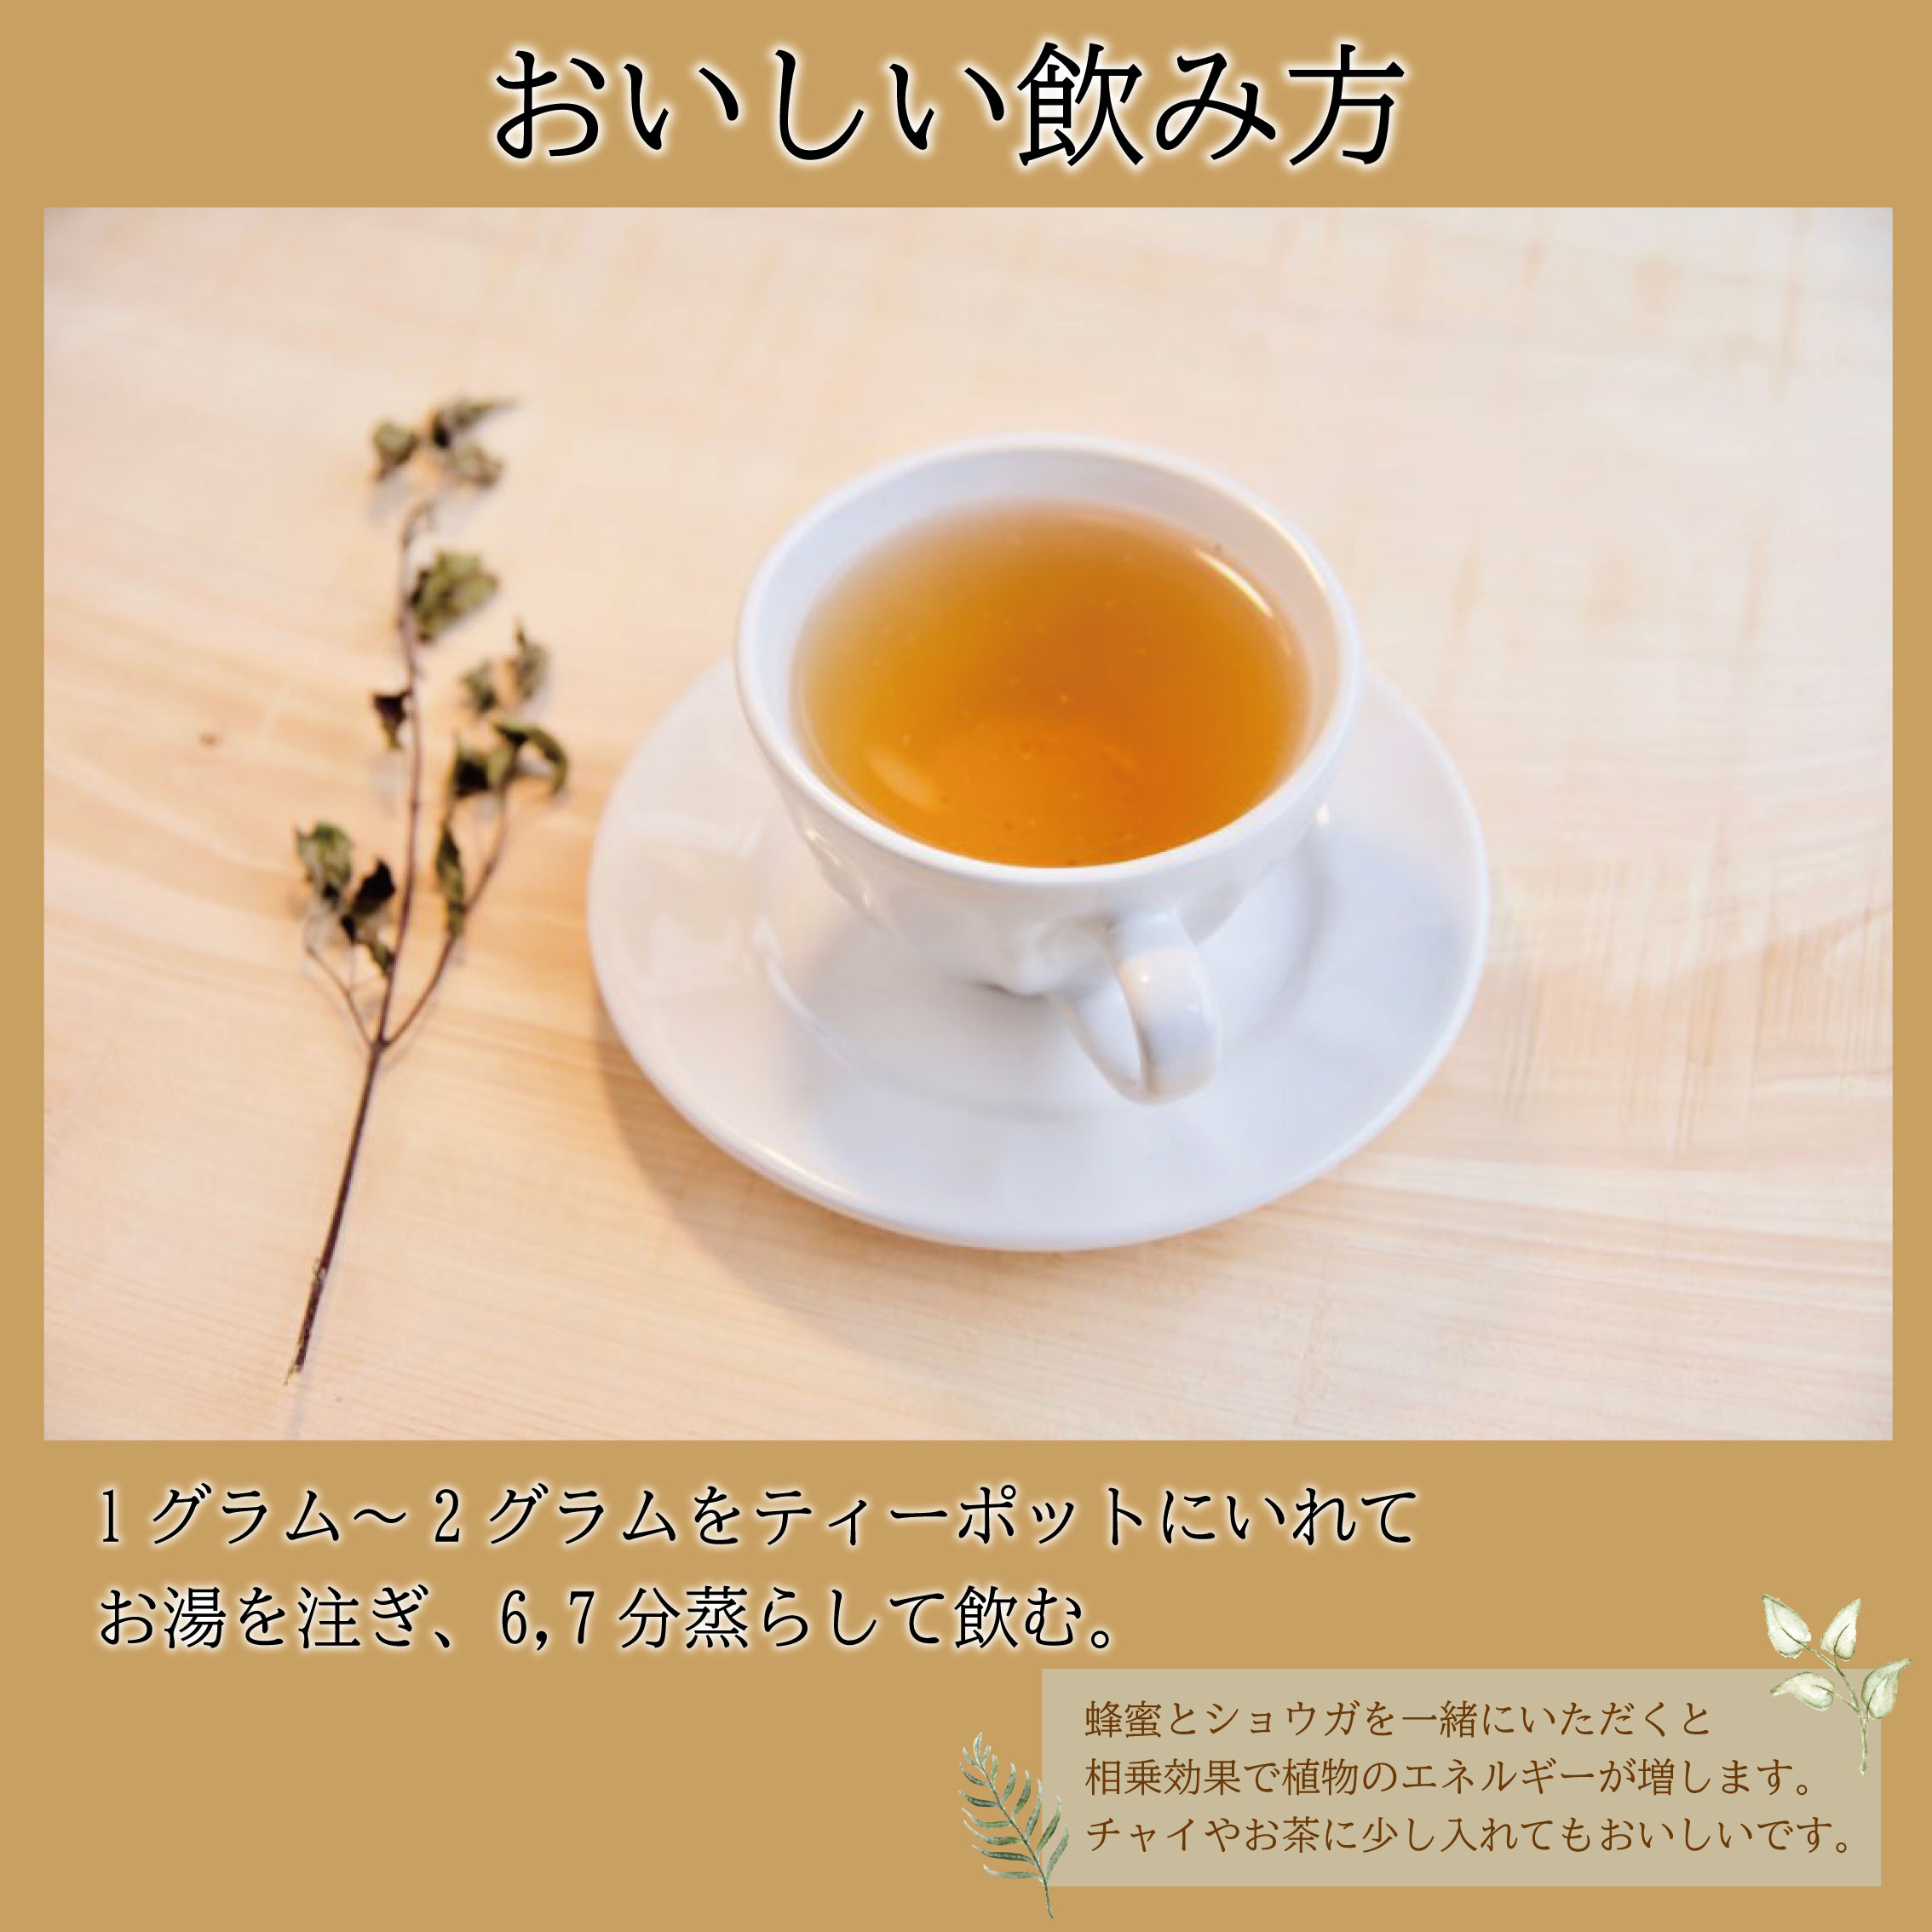 ブレンド茶 バジル茶 ホーリーバジル茶 2種 セット ハーブティ 徳島県 阿波市 ハナサカーラ 